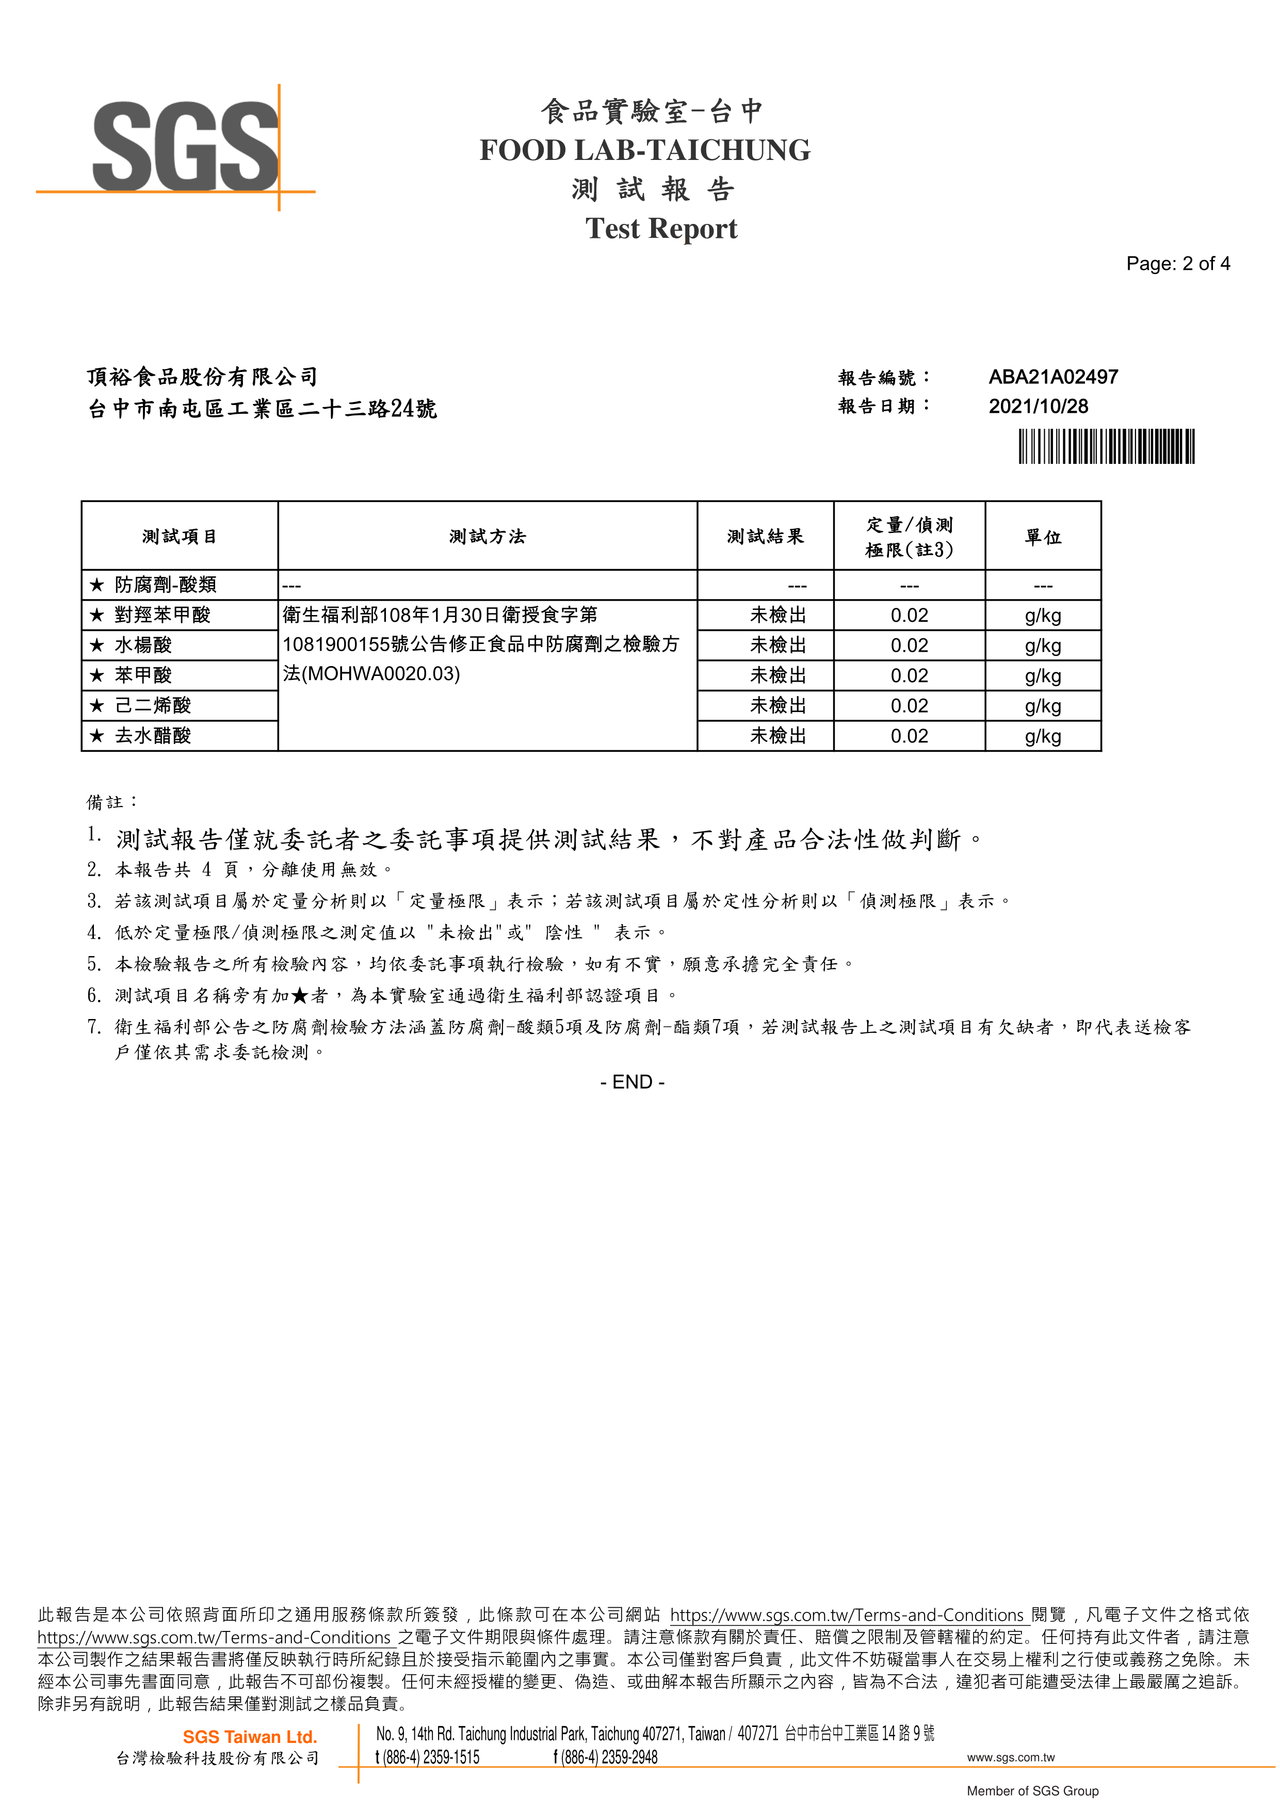 東北酸菜鍋-防腐劑檢驗報告2021.10.28